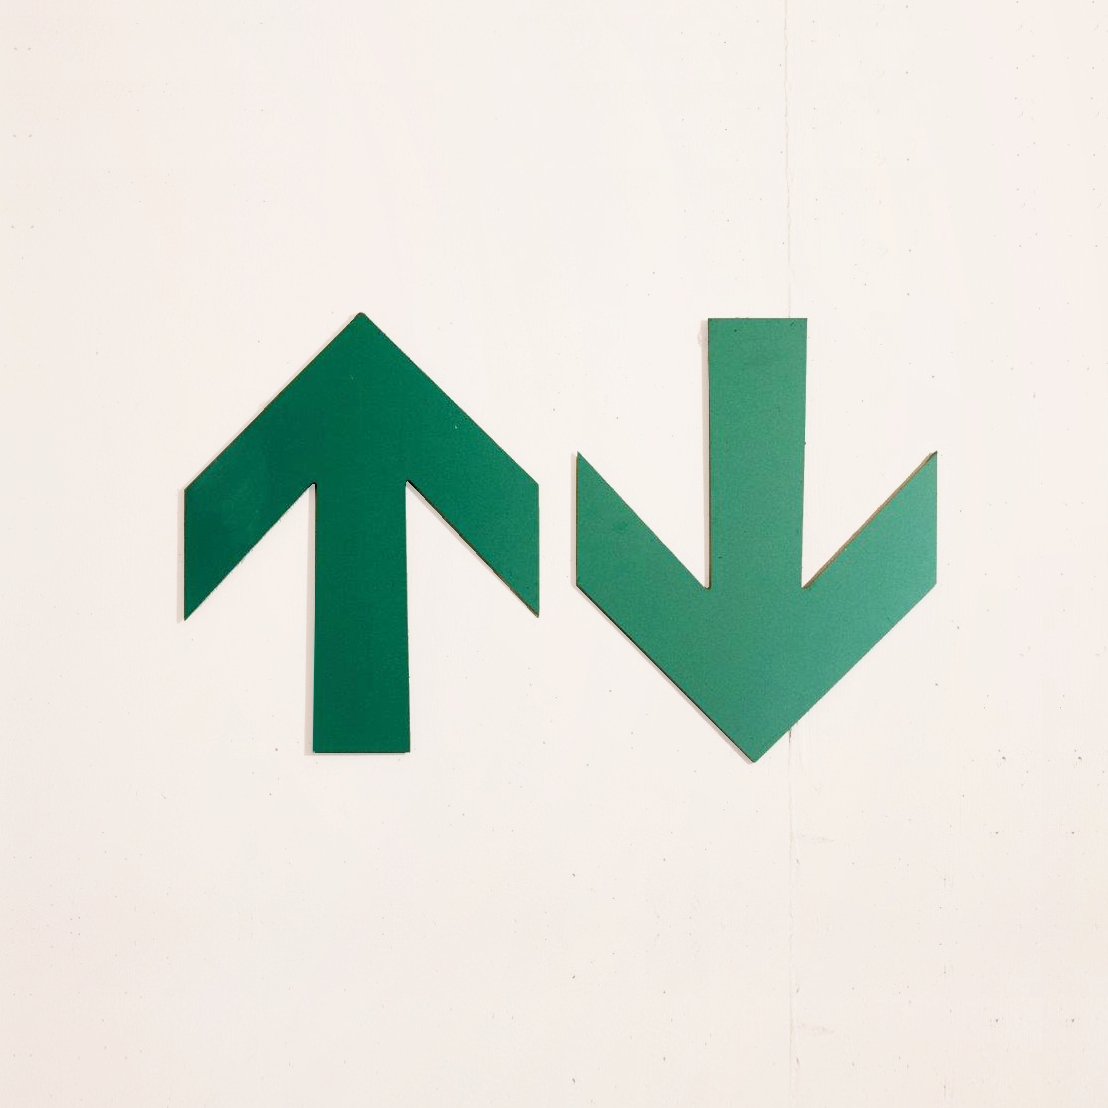 Zwei grüne Pfeile auf einer Betonwand zeigen nach oben bzw. nach unten